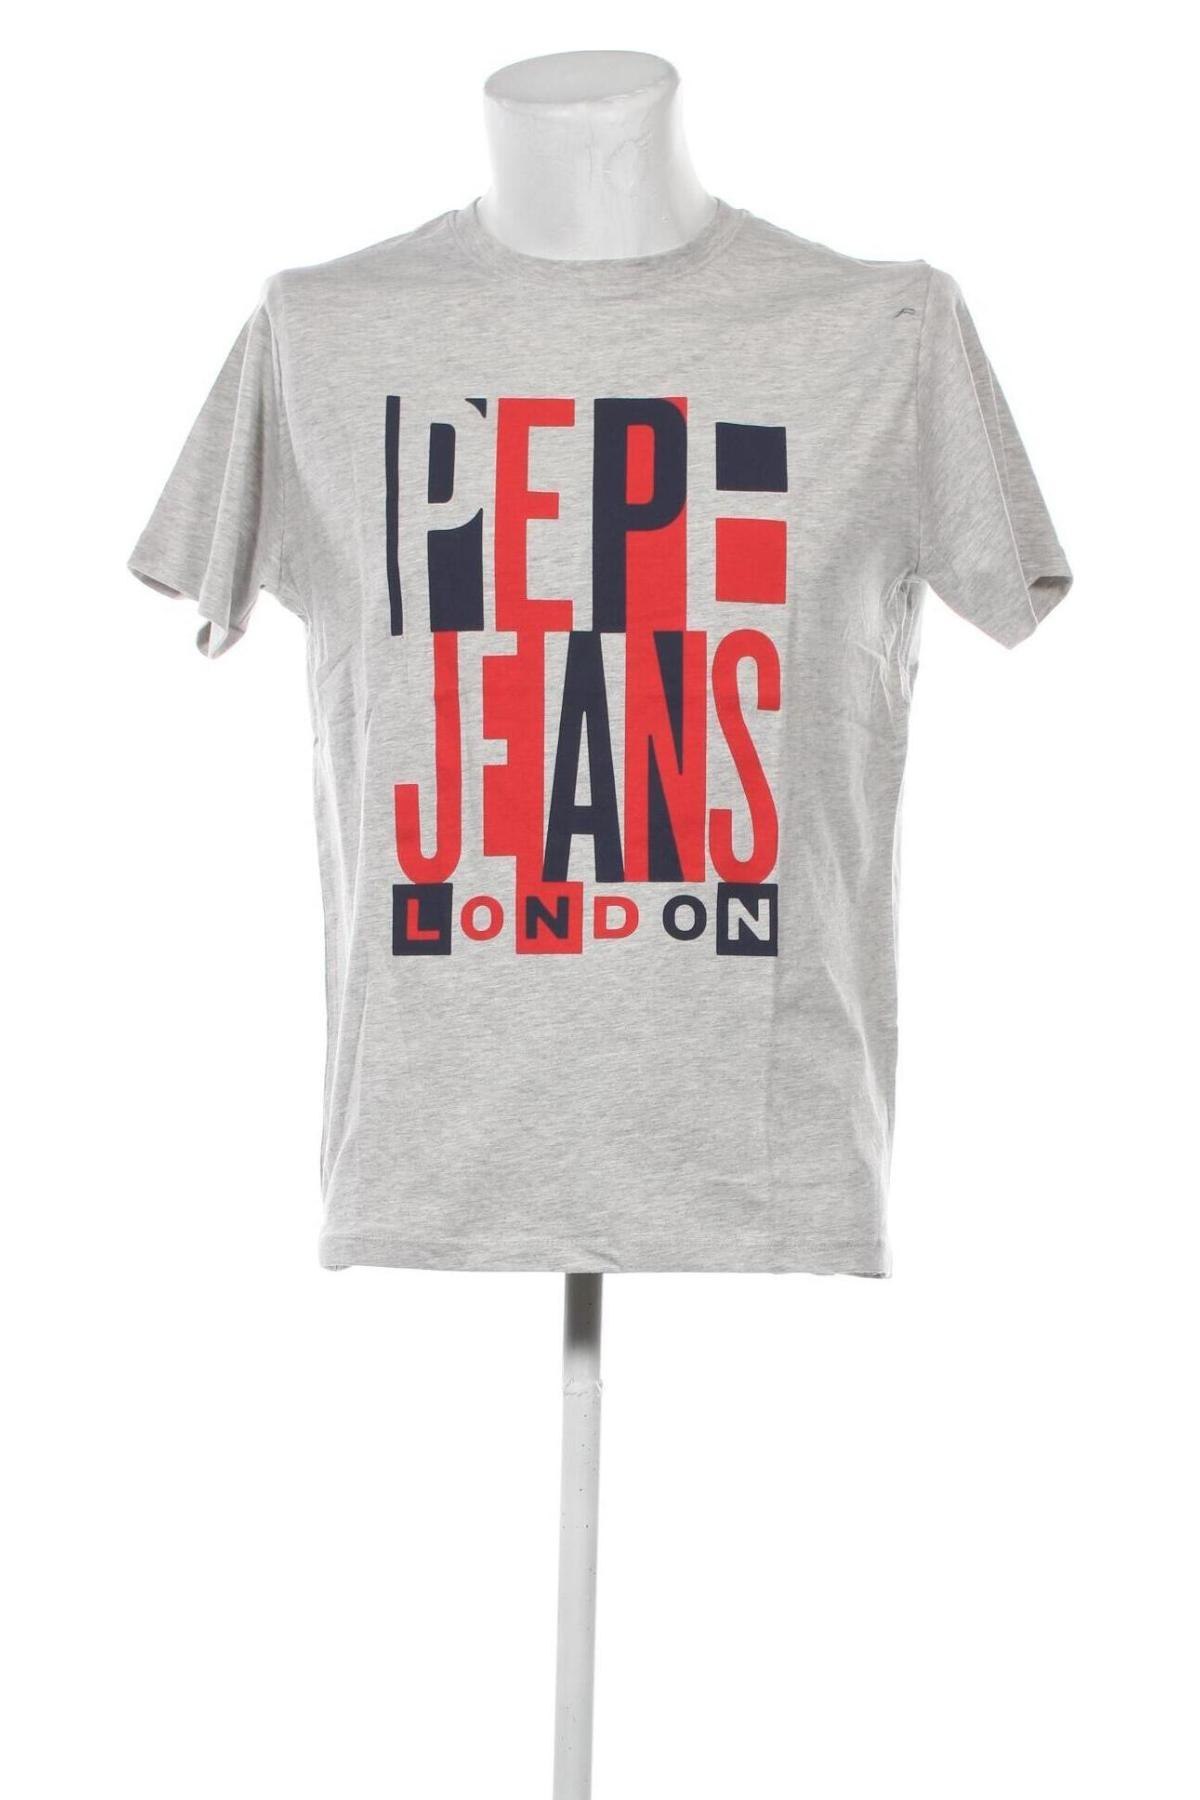 Herren T-Shirt Pepe günstig - Remix - bei Jeans #123455064